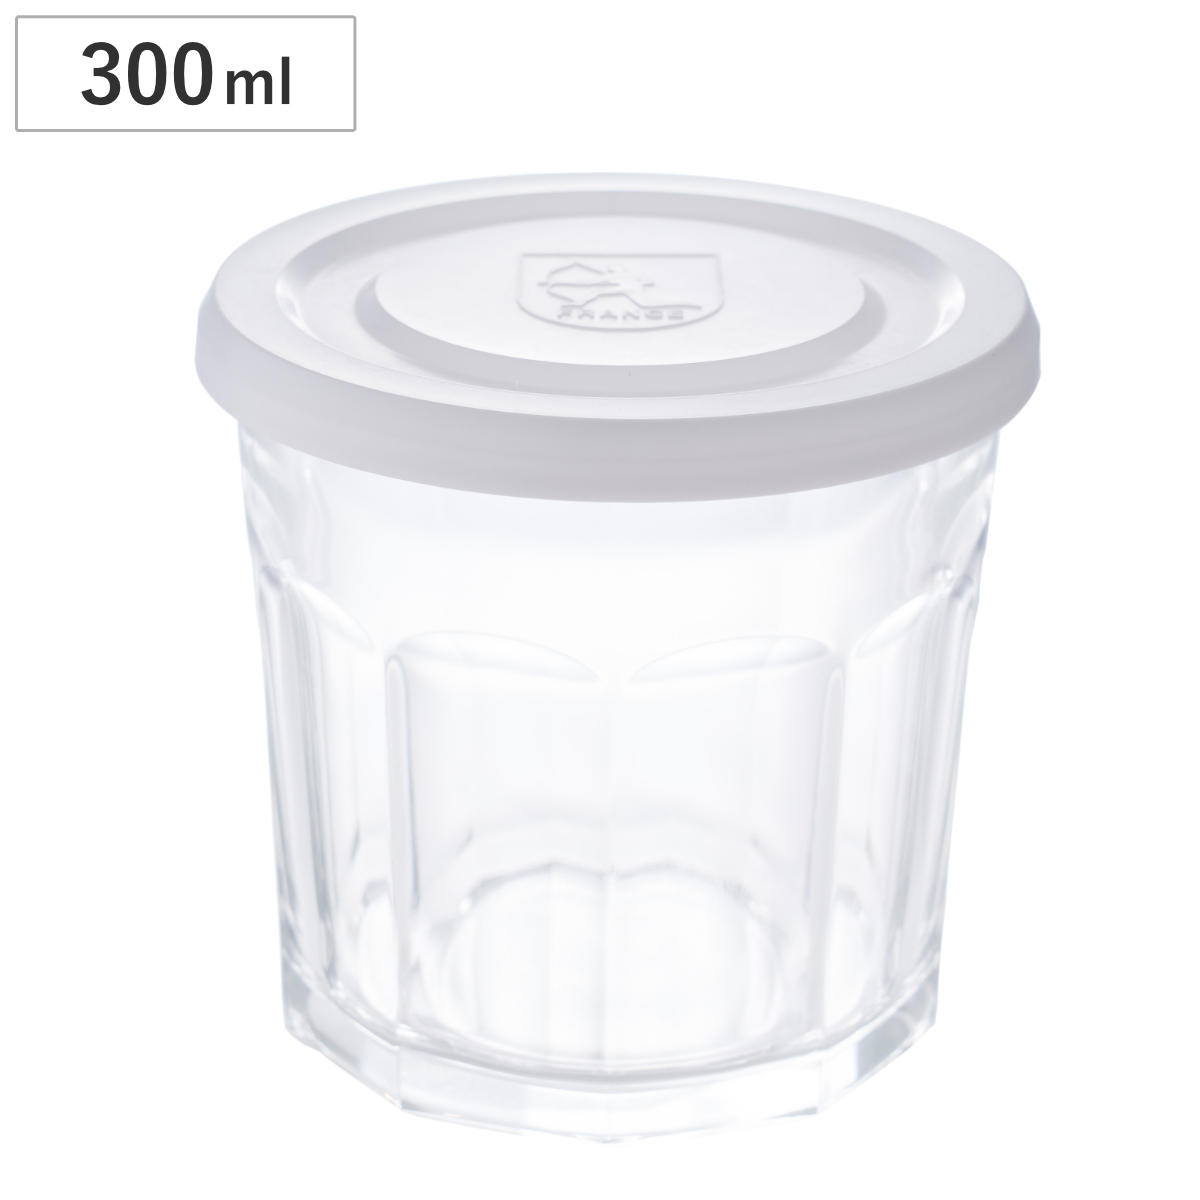 ジャムジャー ホワイトキャップ ジャム瓶 S 300ml ARC 保存容器 ガラス製